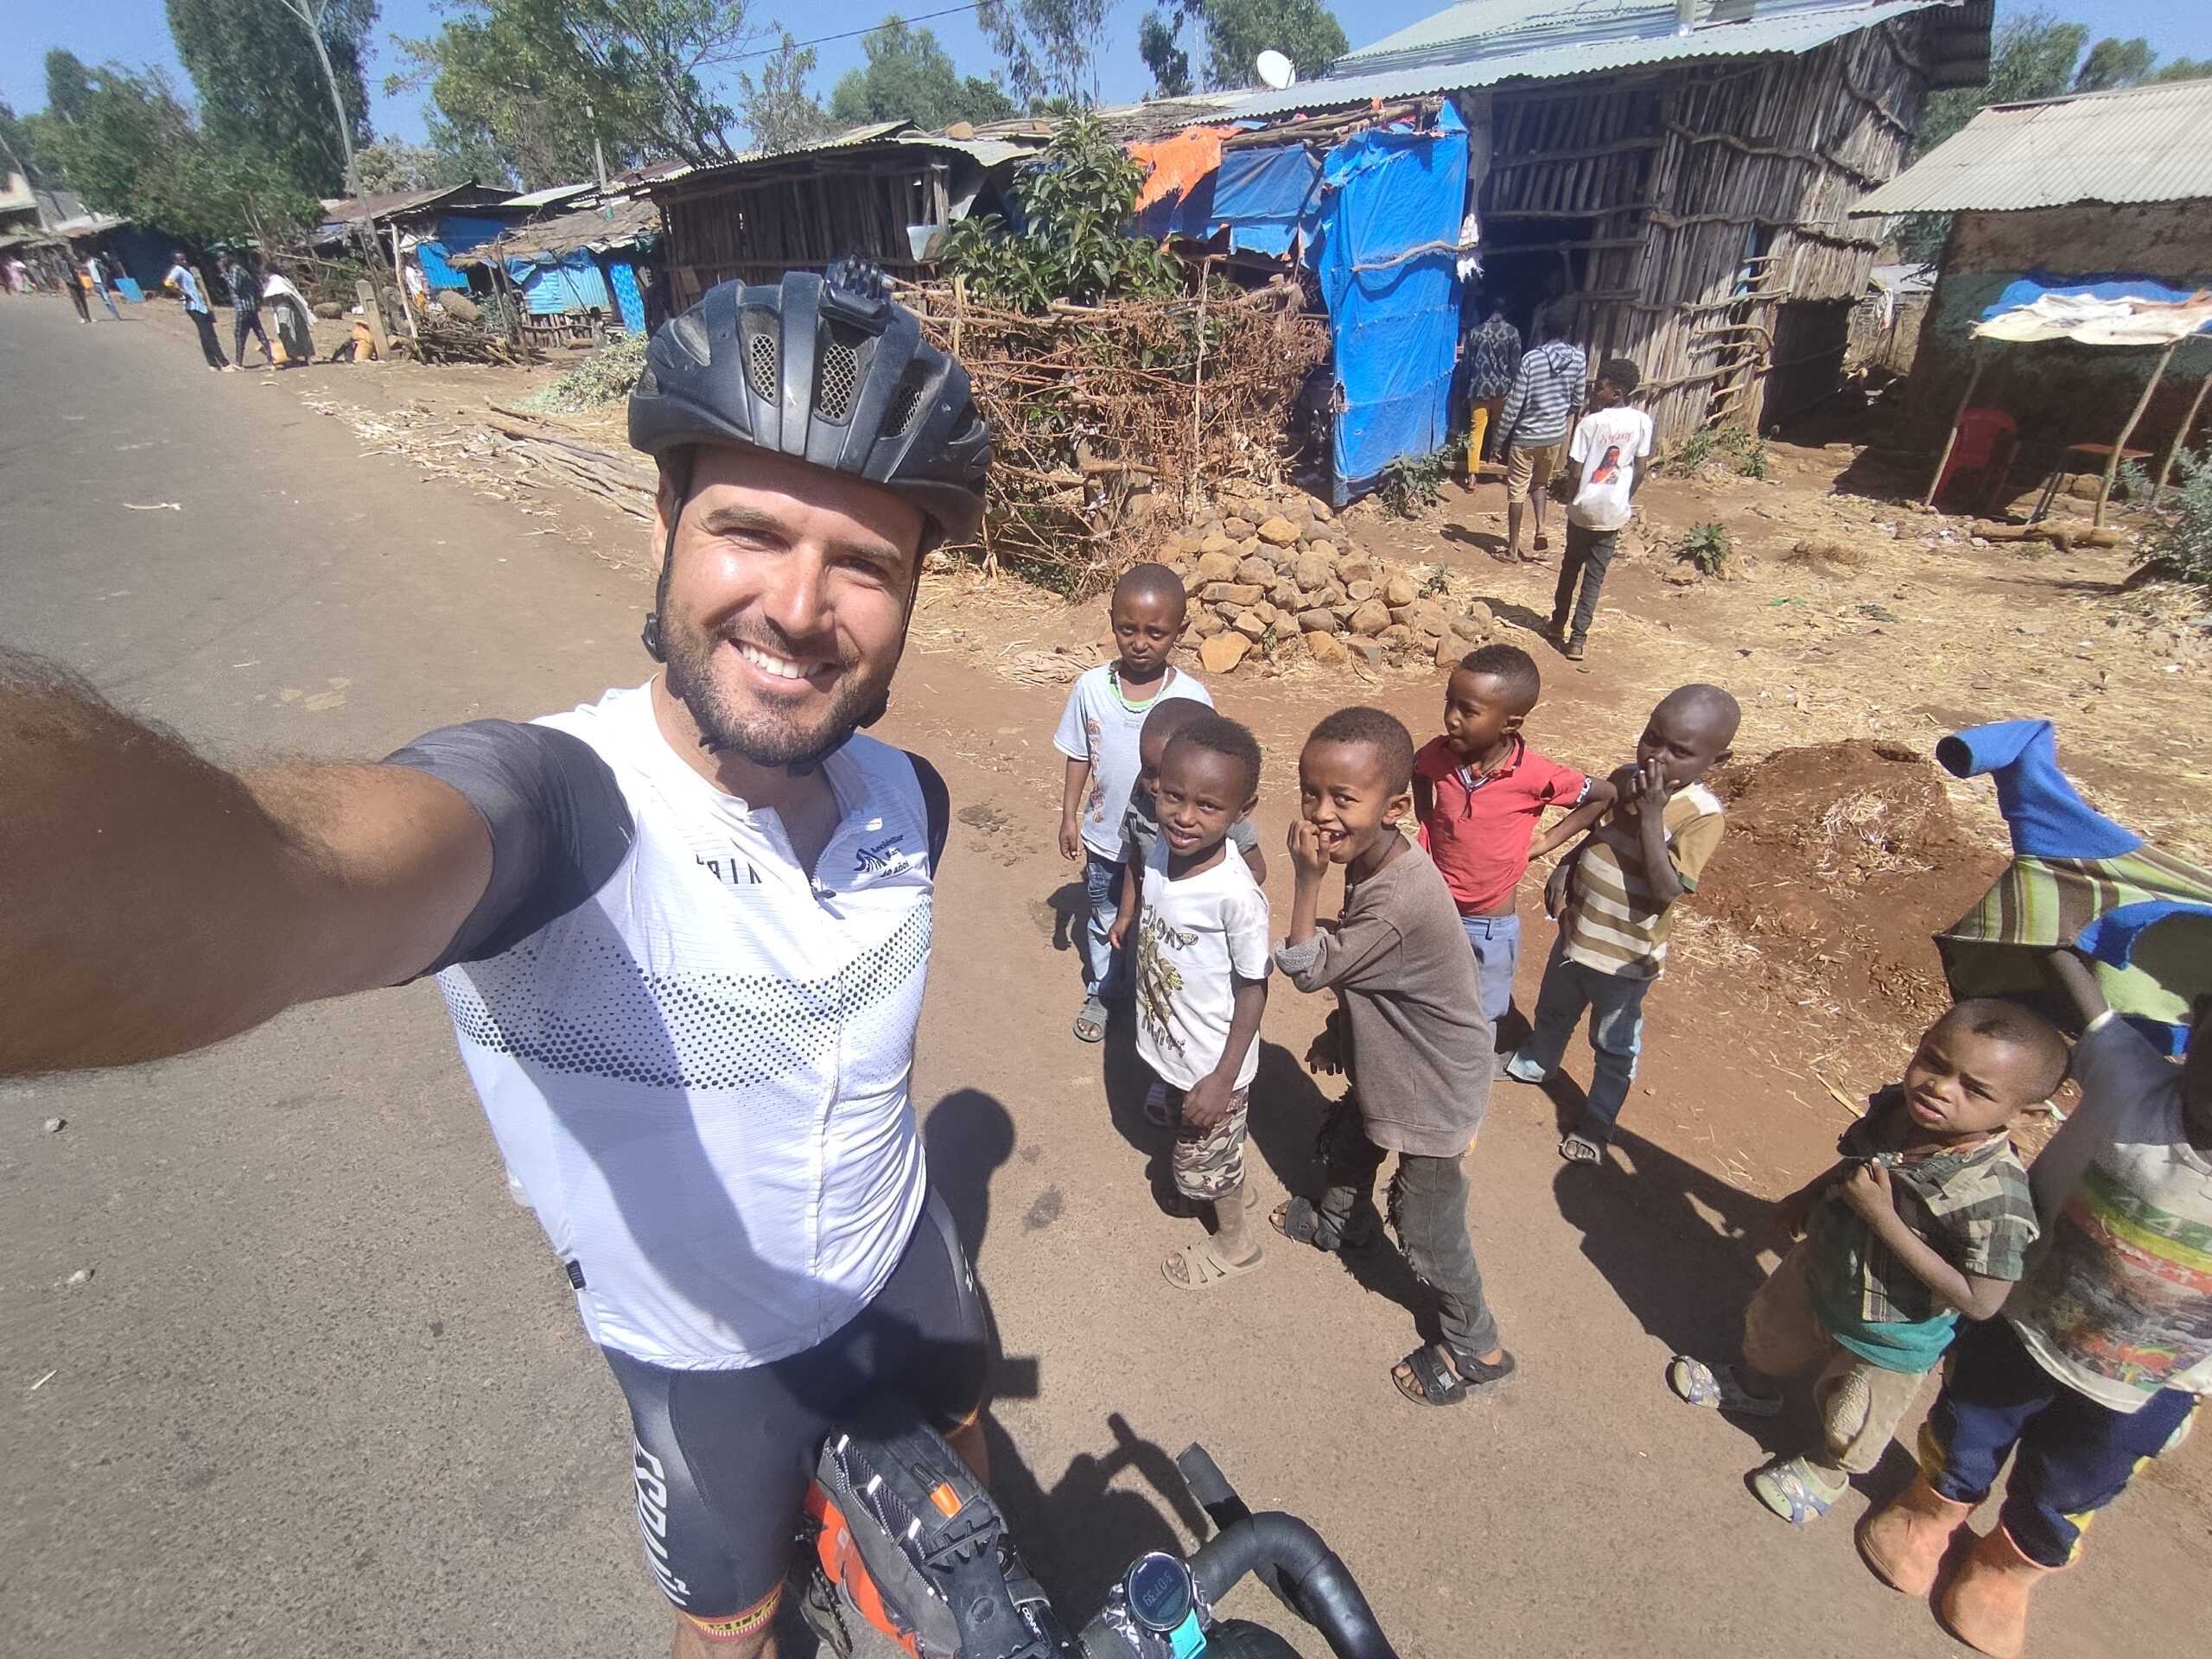 El villenero que está cruzando África en bicicleta llega a Kenia